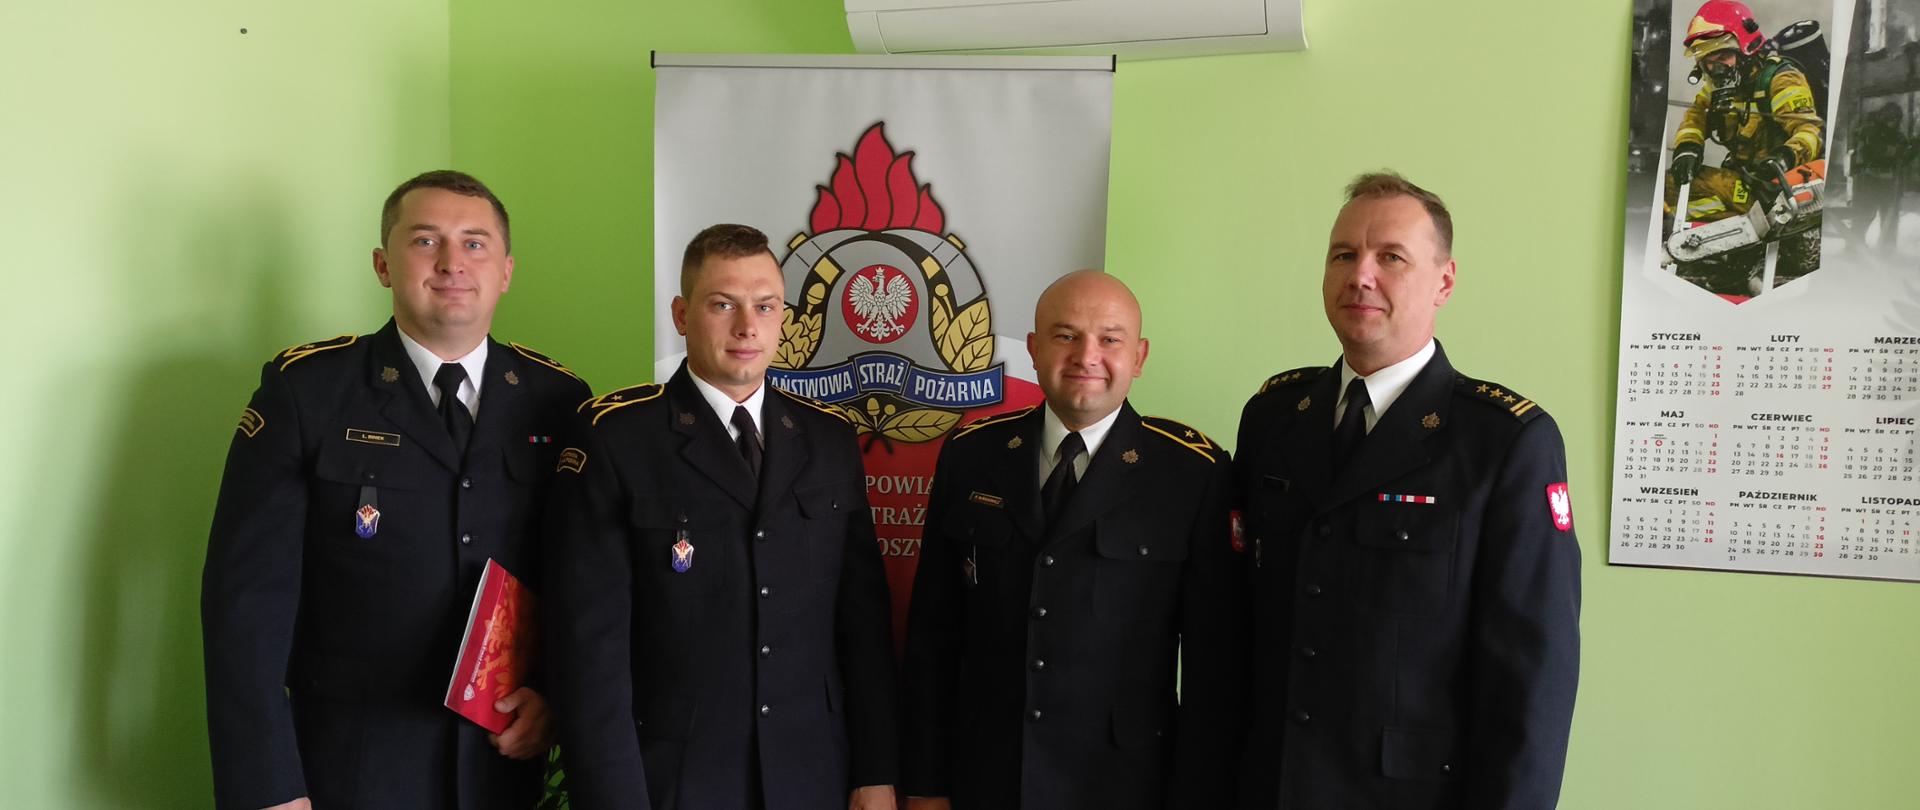 Zdjęcie przedstawia czterech strażaków w mundurach wyjściowych na tle baneru z logiem Państwowej Straży Pożarnej.